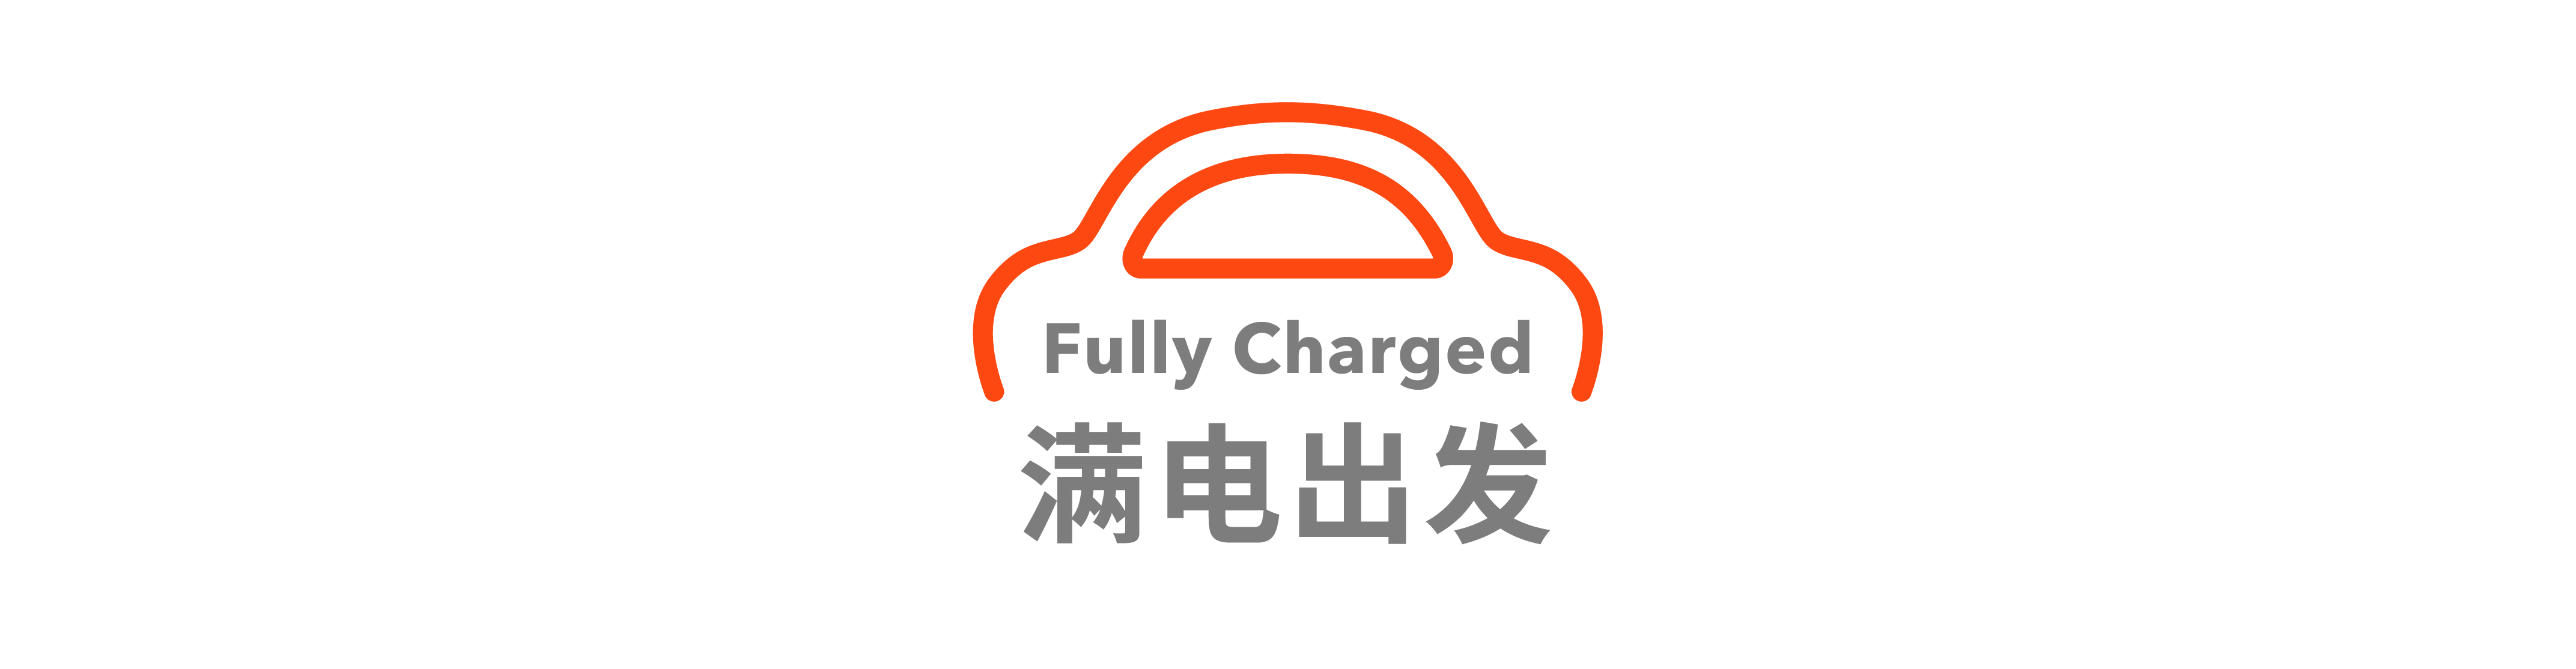 11 - Xiaomi Snow Test Exposure / FF ha firmato un accordo strategico con la città di Huanggang / Debutto della Corvette E-Ray